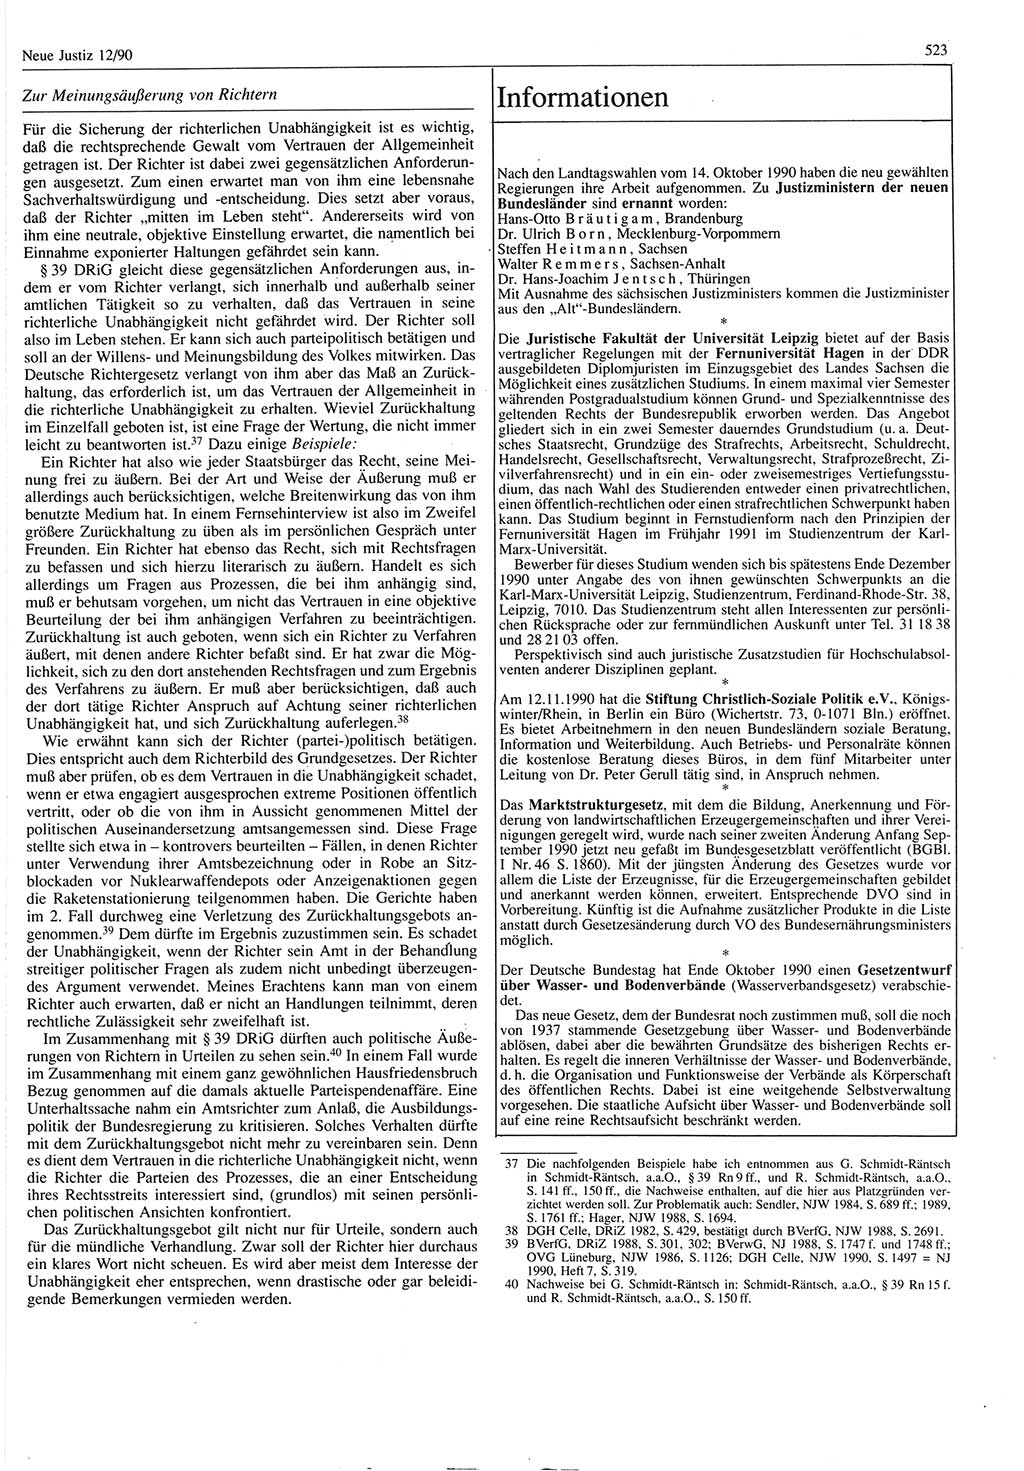 Neue Justiz (NJ), Zeitschrift für Rechtsetzung und Rechtsanwendung [Deutsche Demokratische Republik (DDR)], 44. Jahrgang 1990, Seite 523 (NJ DDR 1990, S. 523)